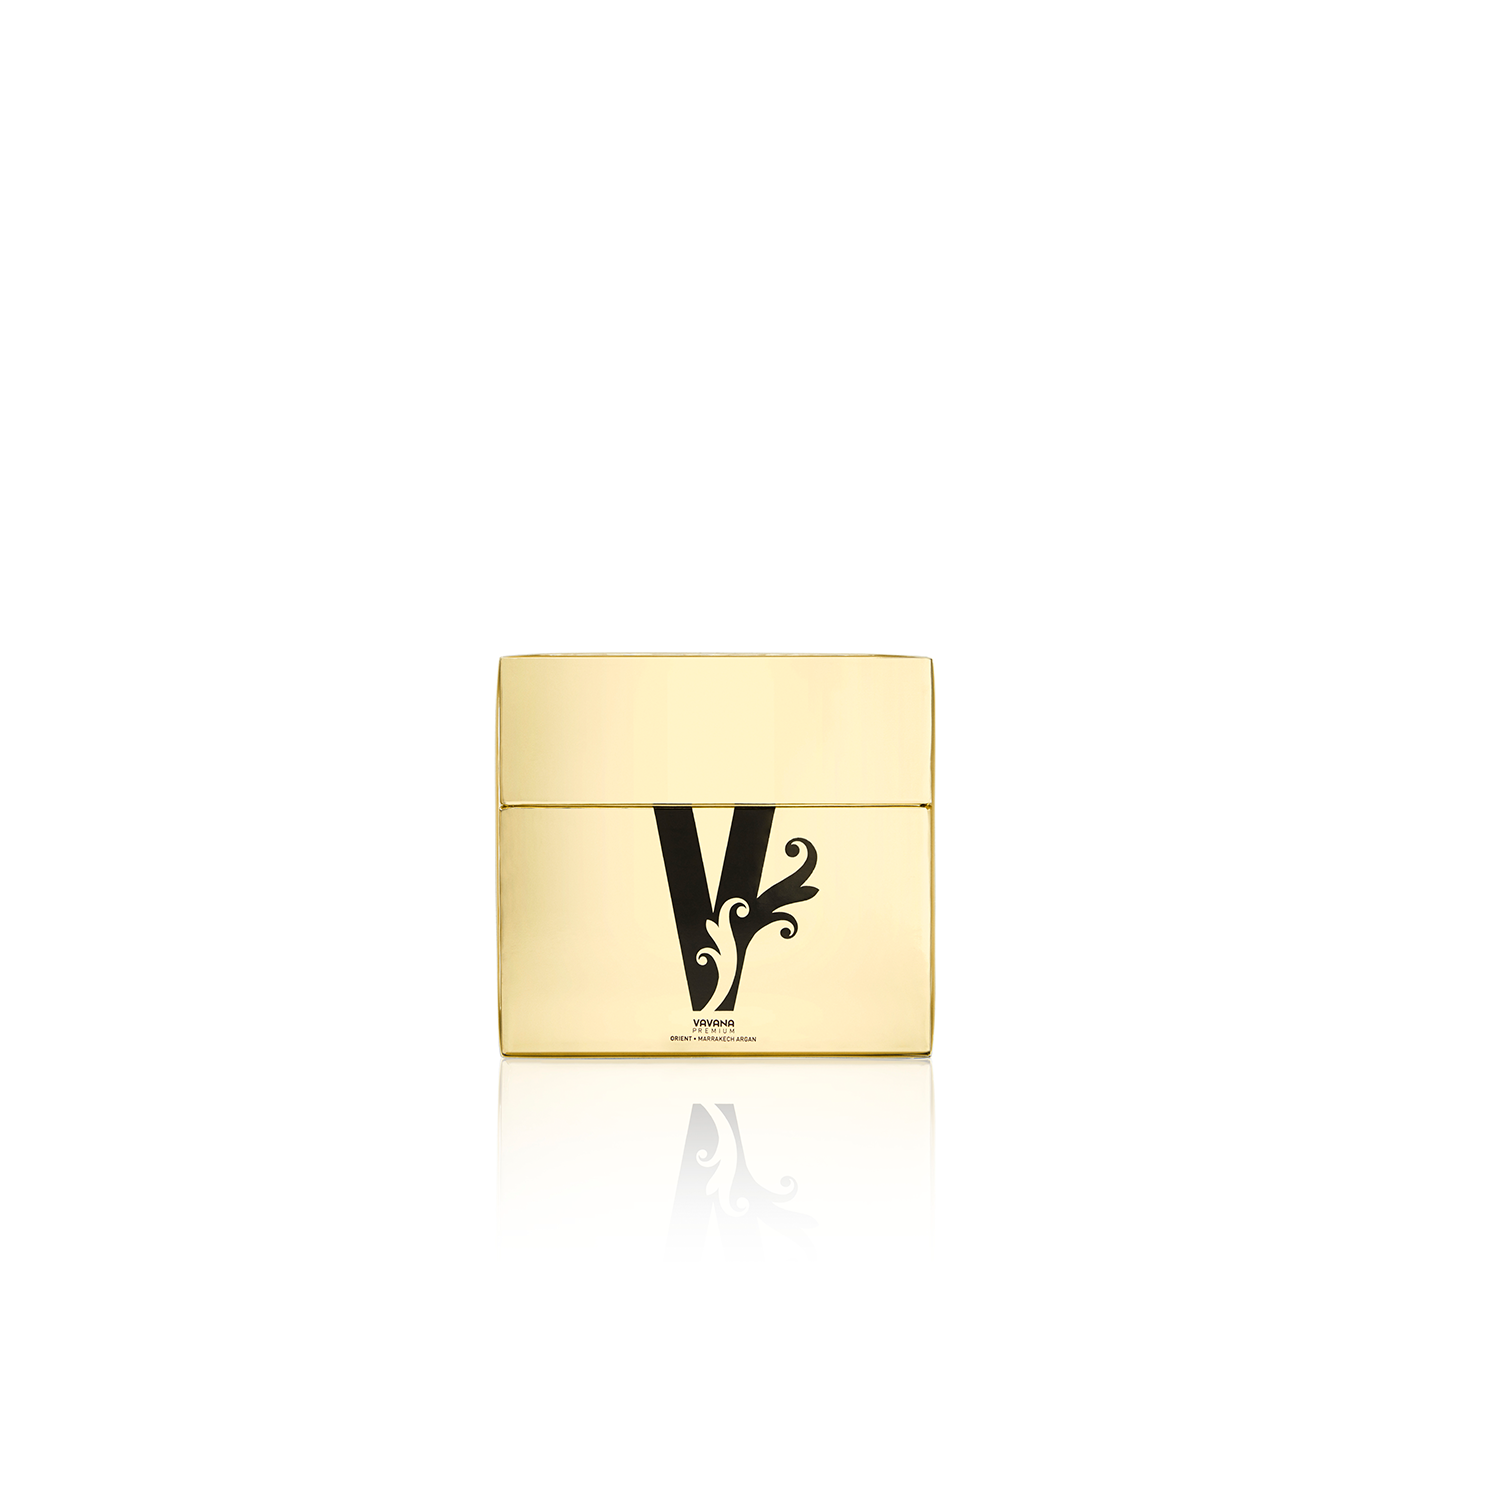 goldene, edle verpackung mit schwarzem vavana logo. spiegelnder schatten der verpackung im weissen hintergrund.